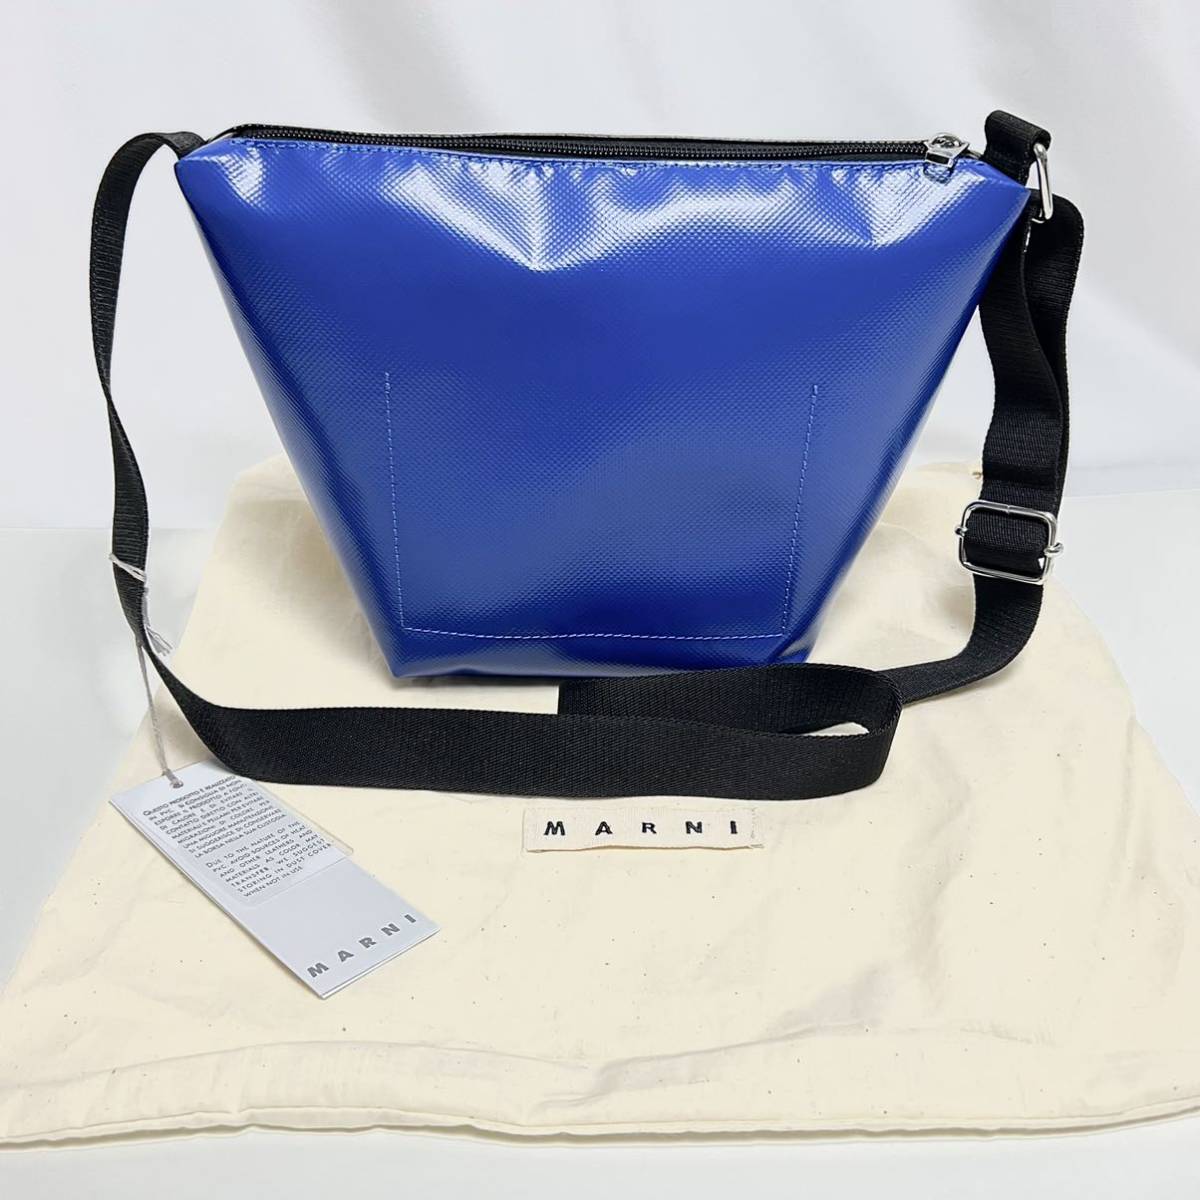  новый товар Marni MARNI TRIBECA сумка на плечо PVCbai цвет чёрный синий tech s коричневый -do сумка черный сумка на плечо Logo водонепроницаемый плечо ..